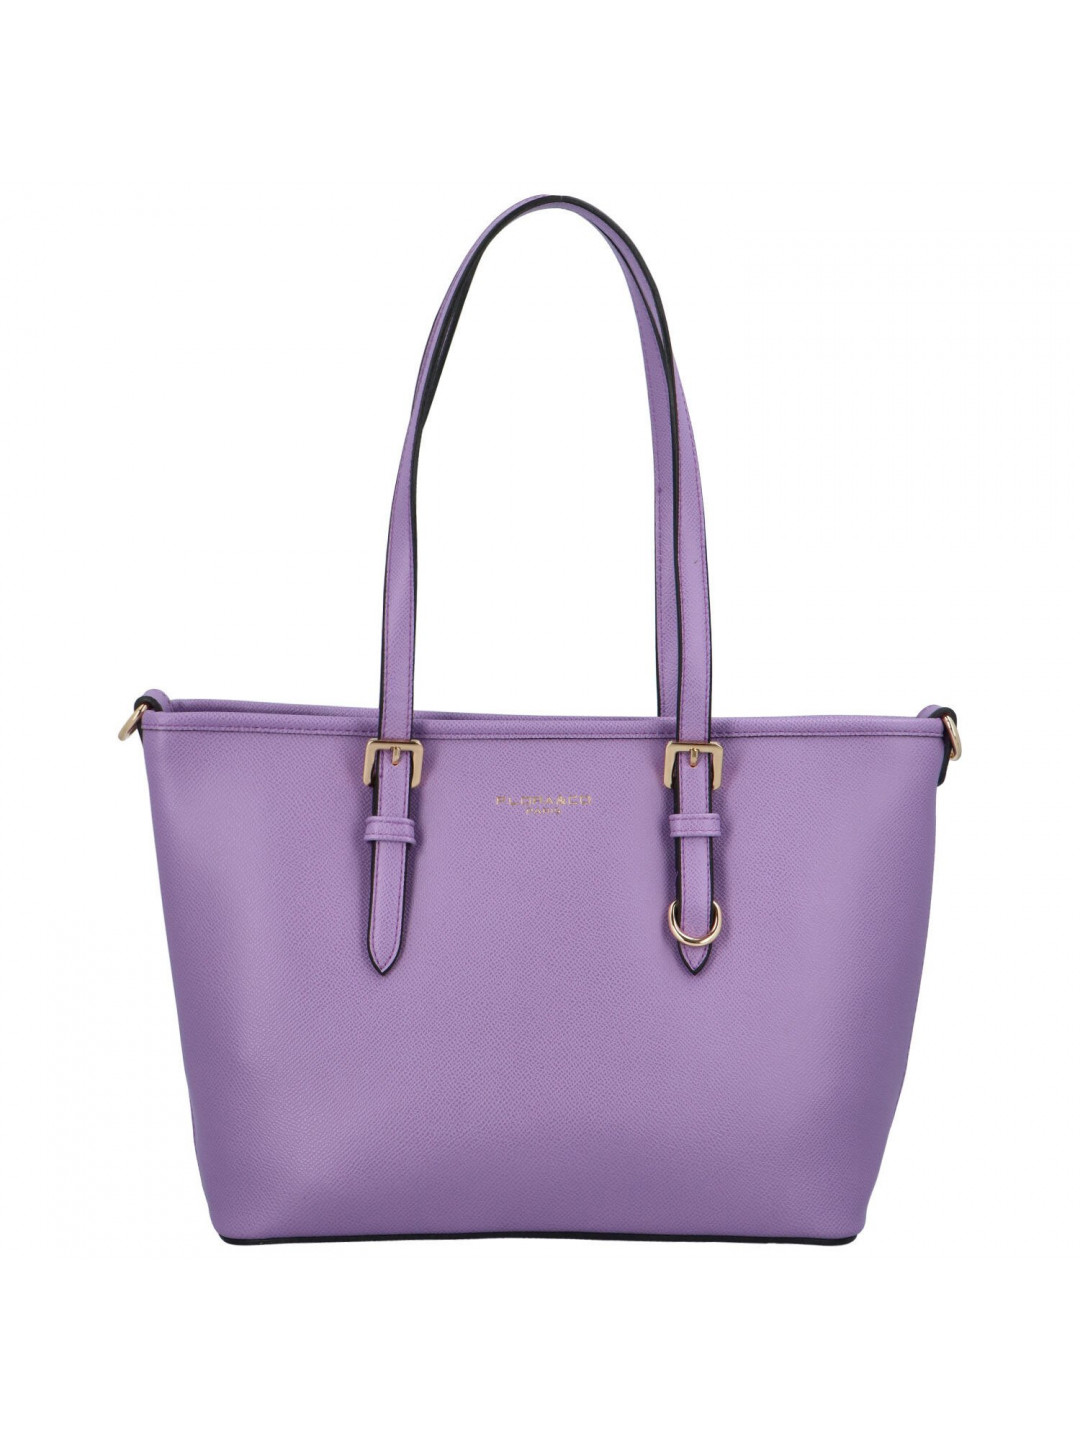 Dámská elegantní kabelka přes rameno fialová – FLORA & CO Elmary